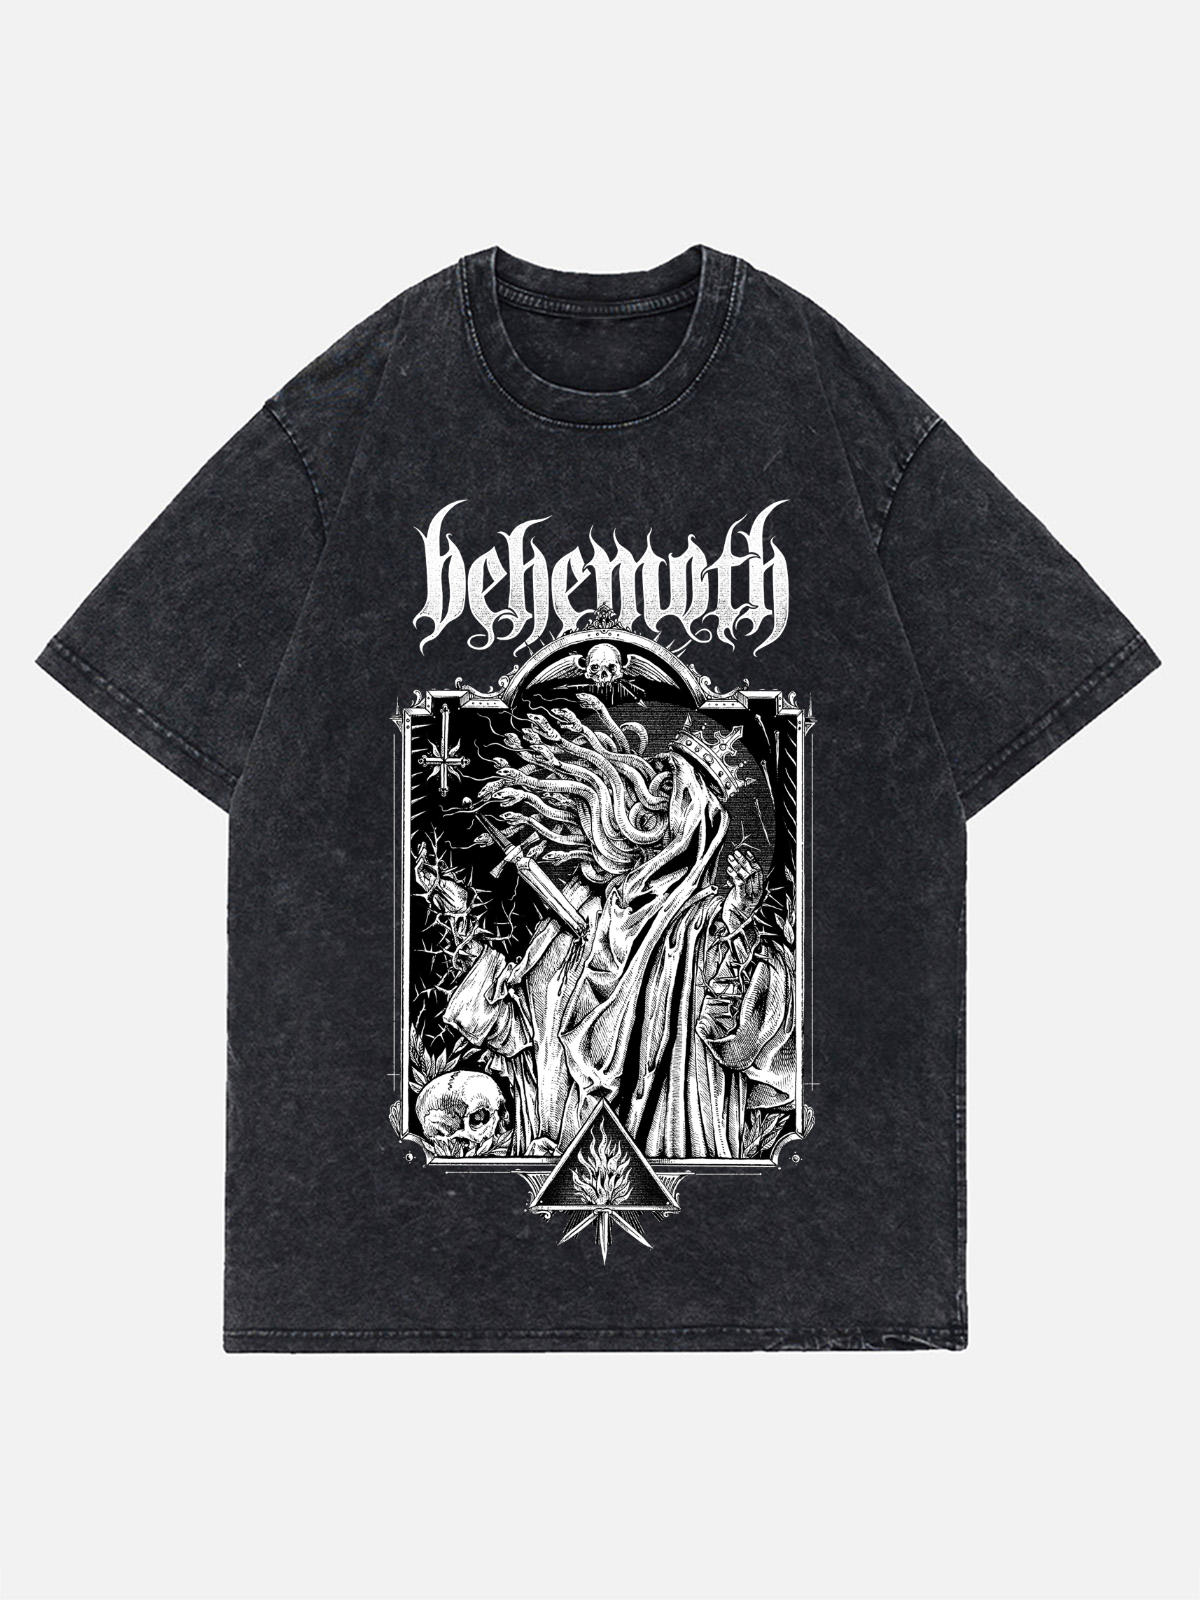 Behemoth T-Shirt  Vintage Wash Denim Shirts